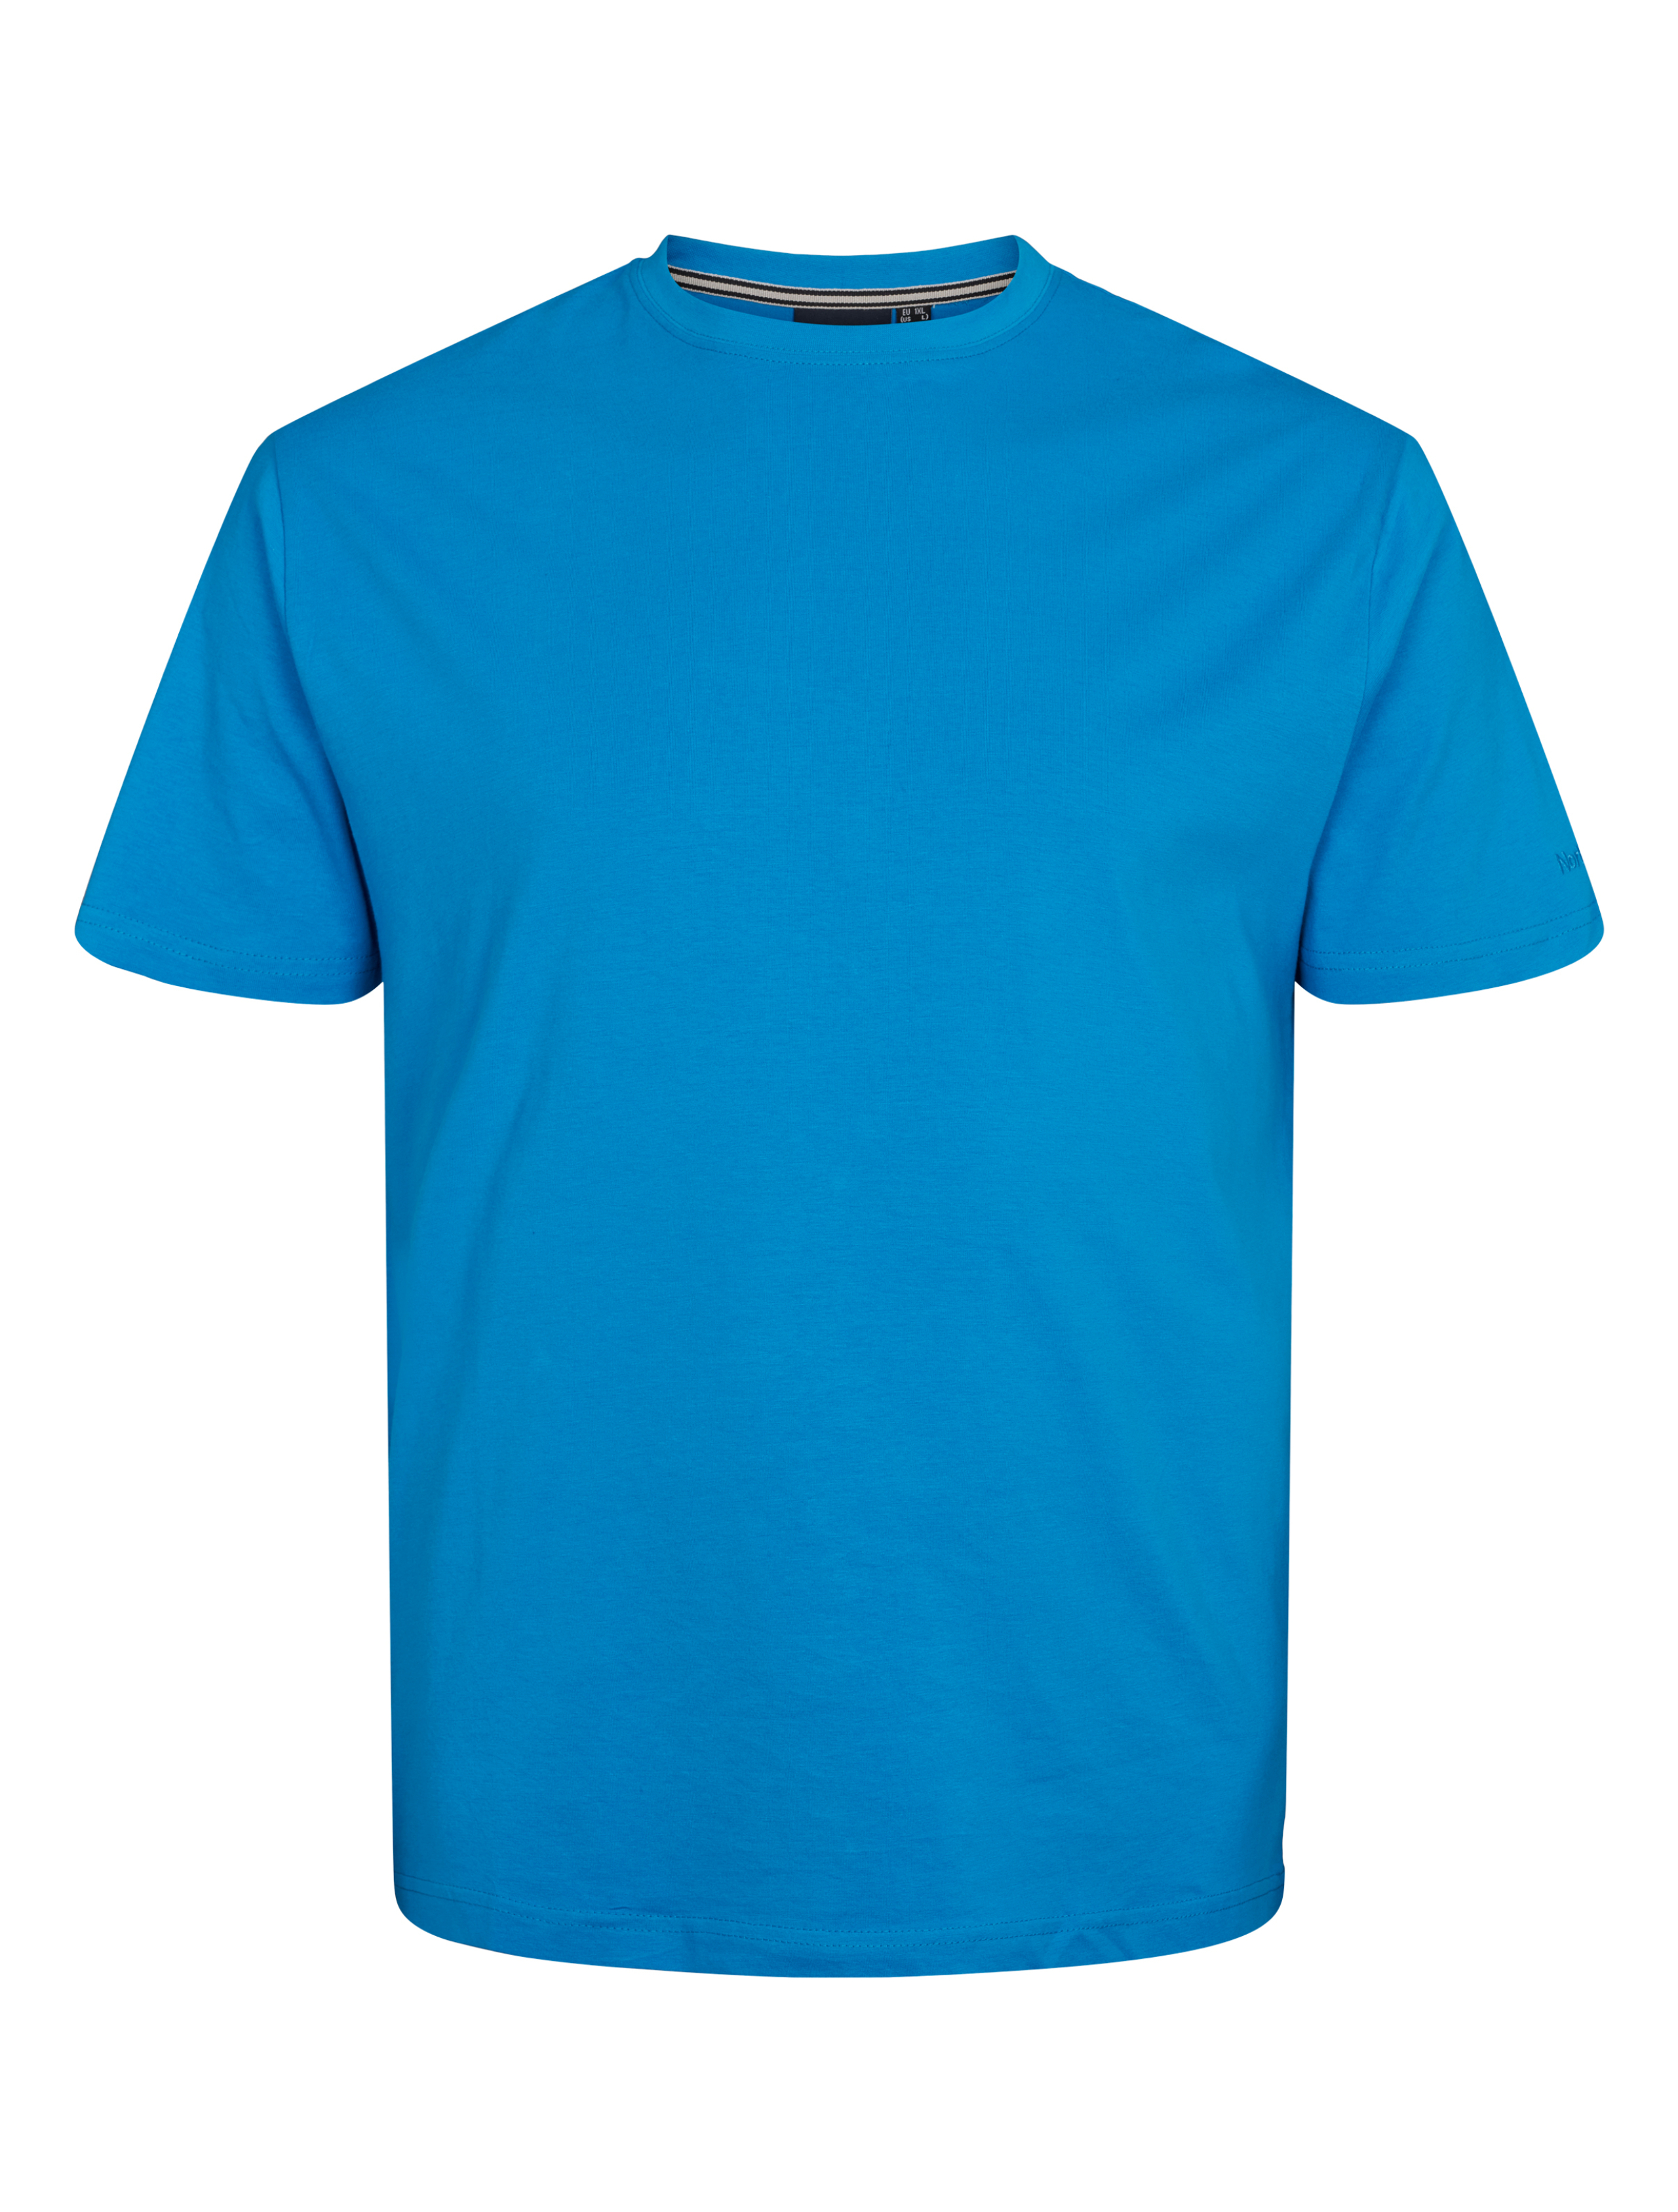 North T-shirt blå / 570 kobolt blå